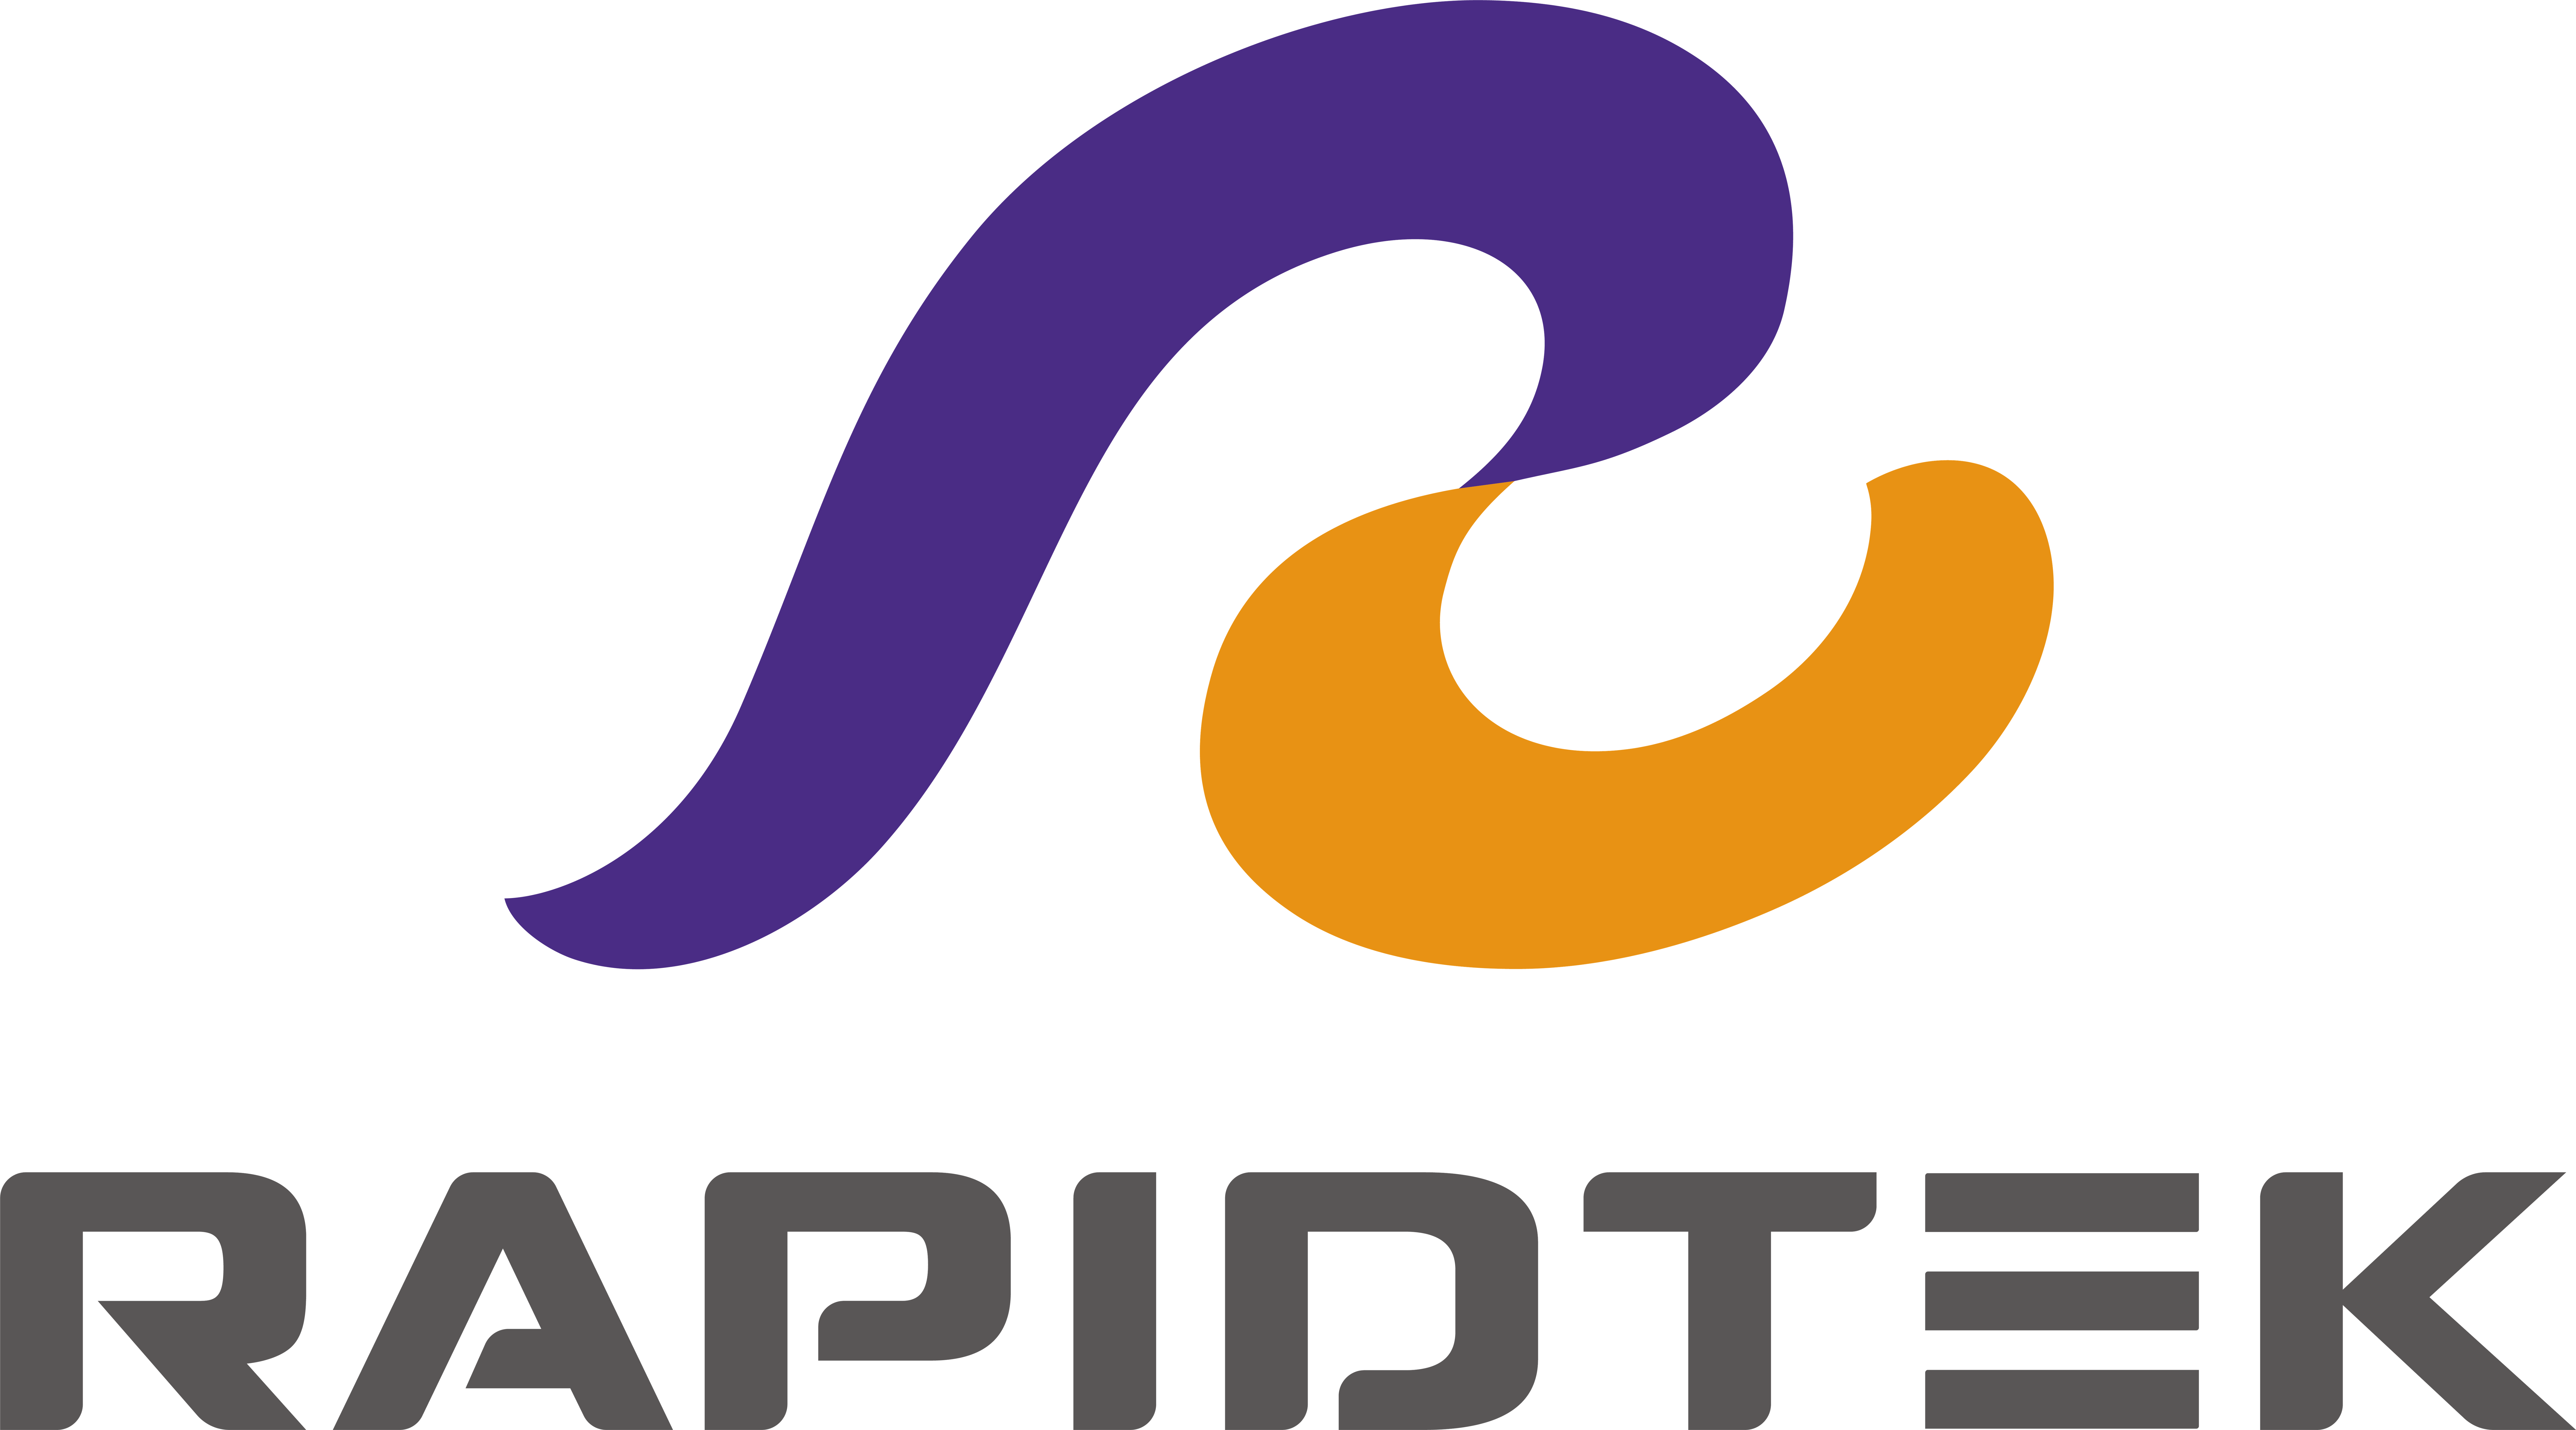 鐳洋科技股份有限公司（Rapidtek Technologies Inc.）